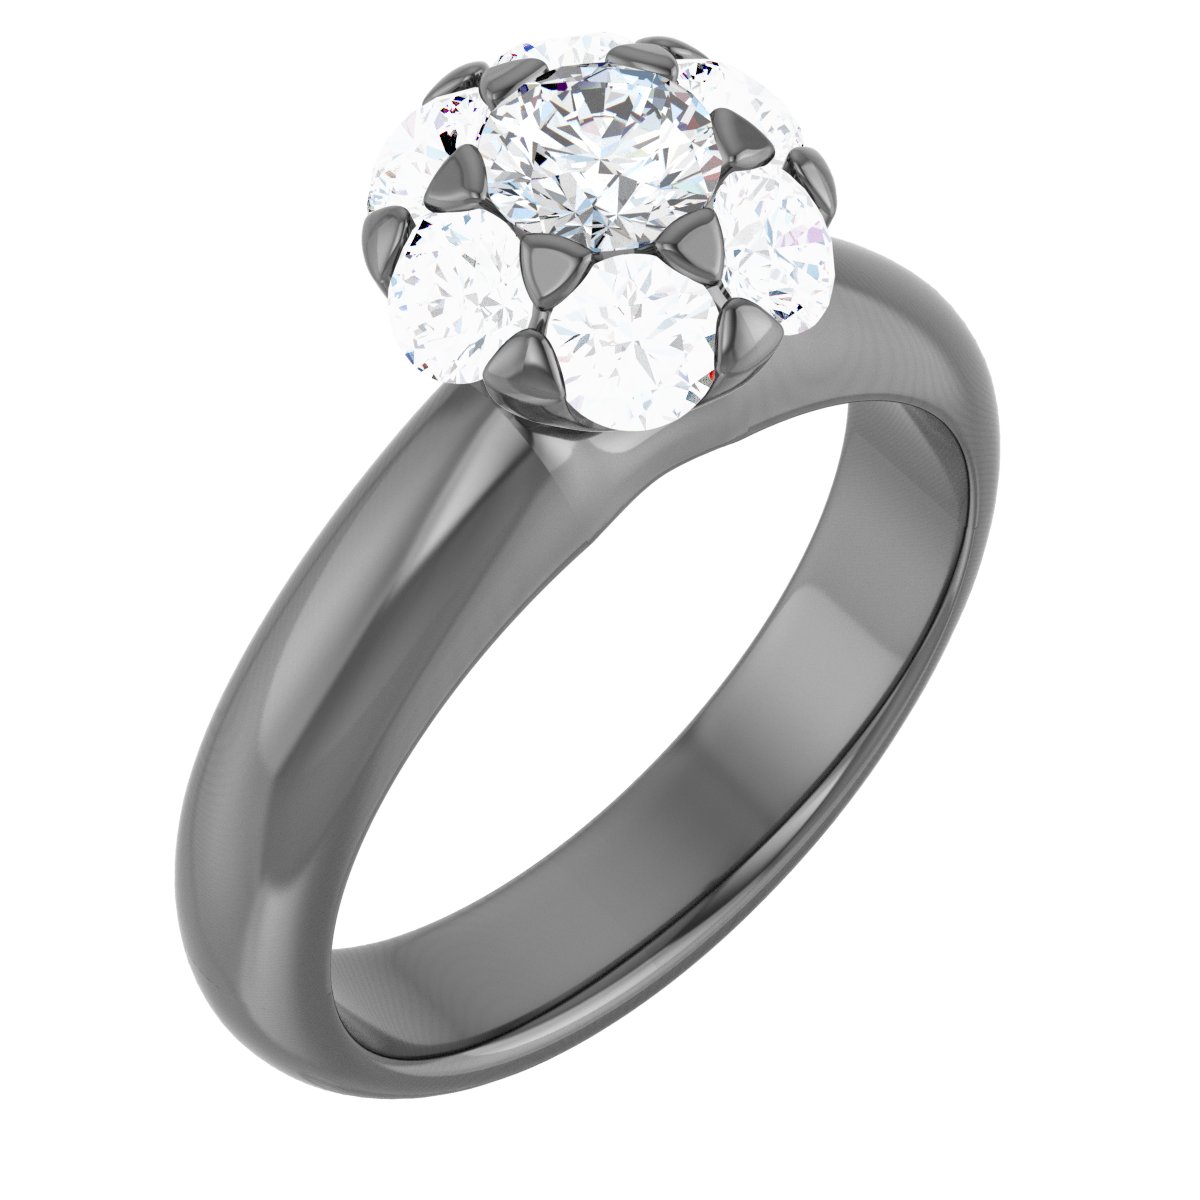 14K White 1 CTW Diamond Cluster Engagement Ring